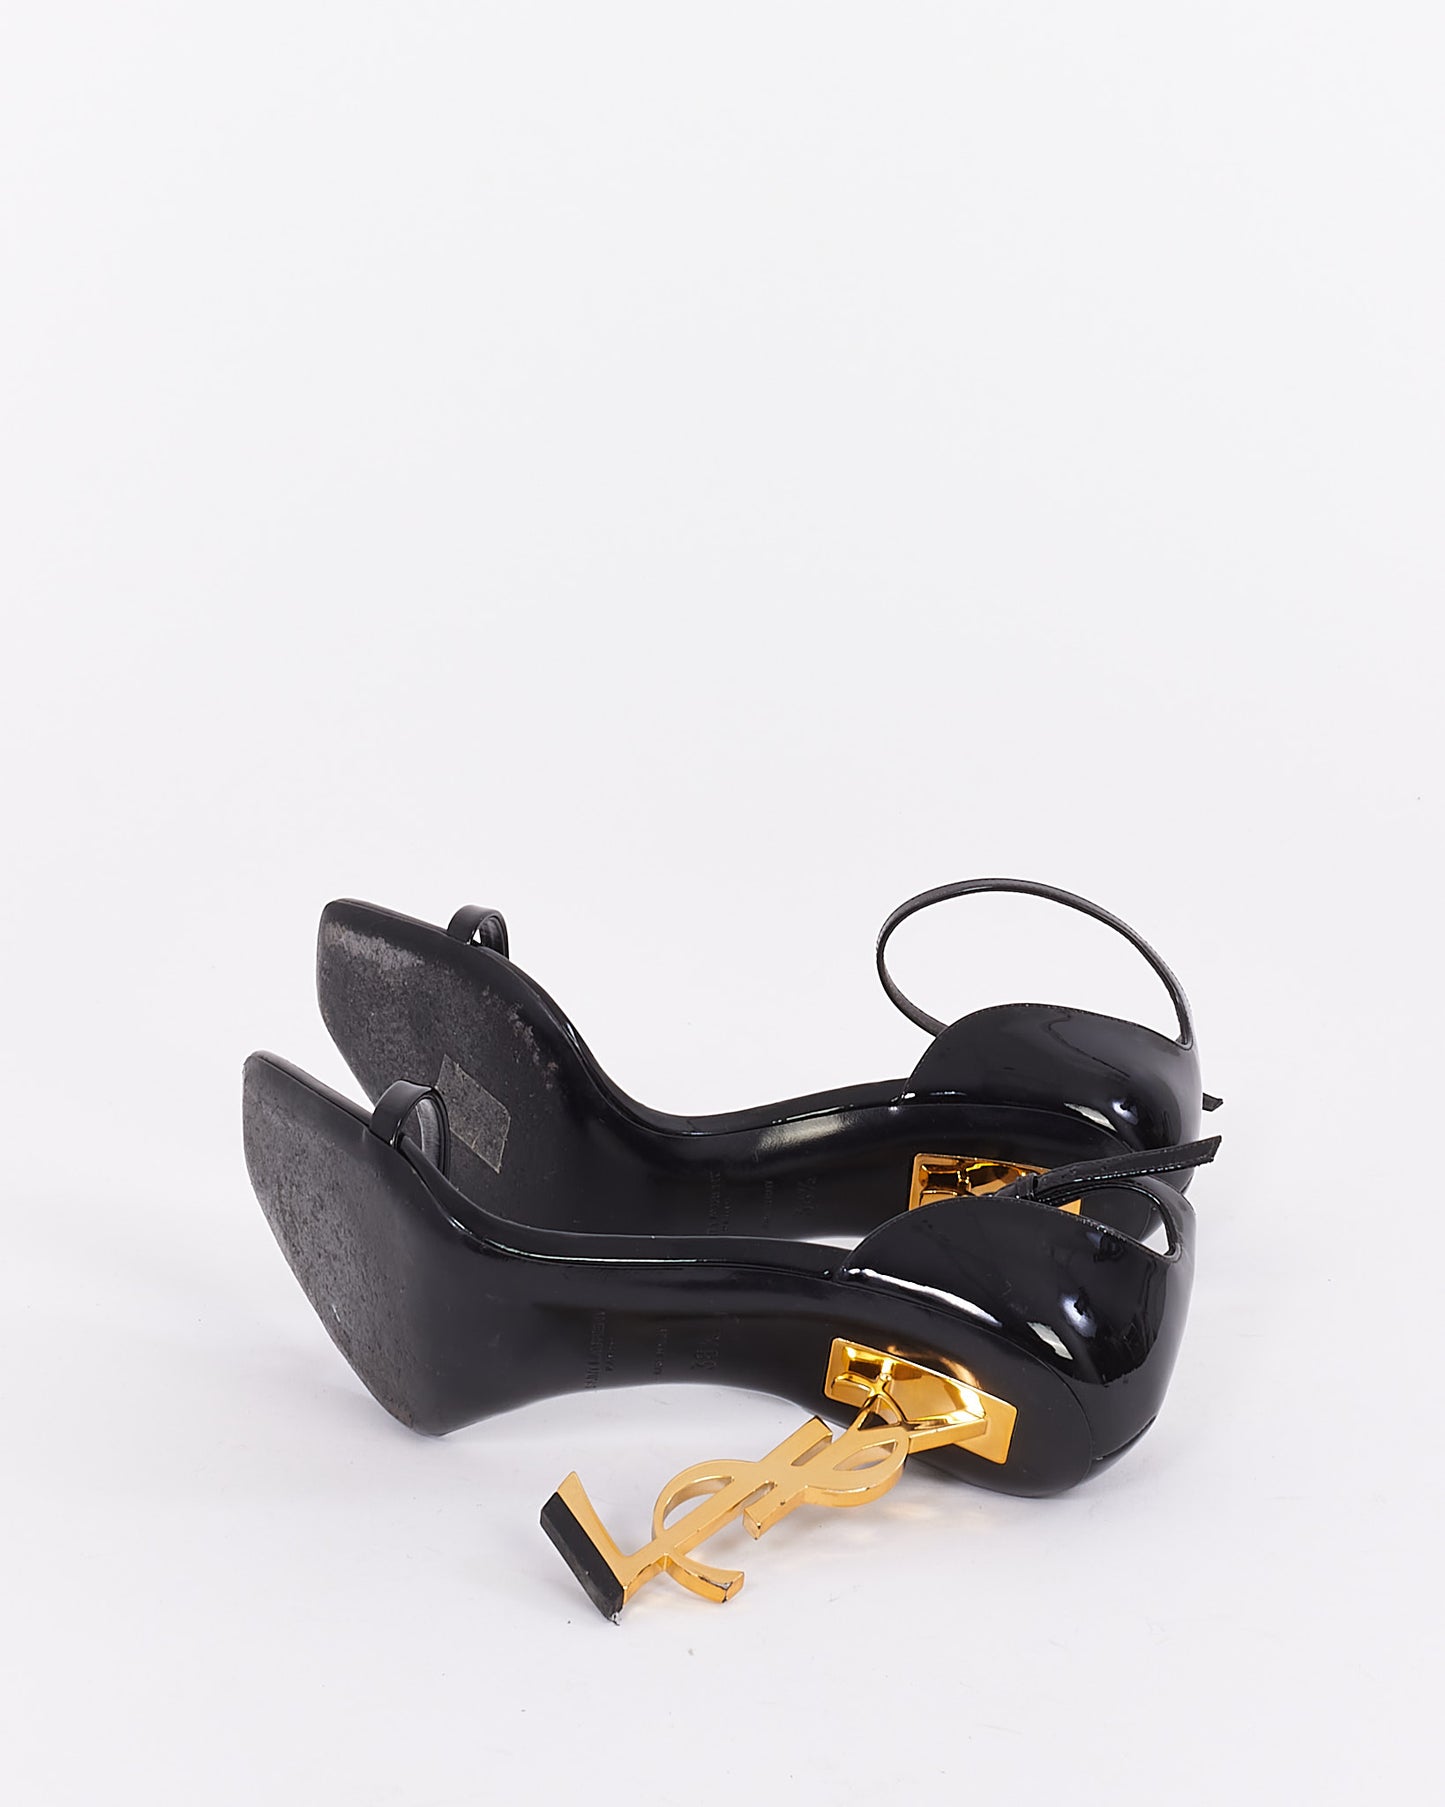 Saint Laurent Black Patent Leather YSL Opyum Sandals - 38.5